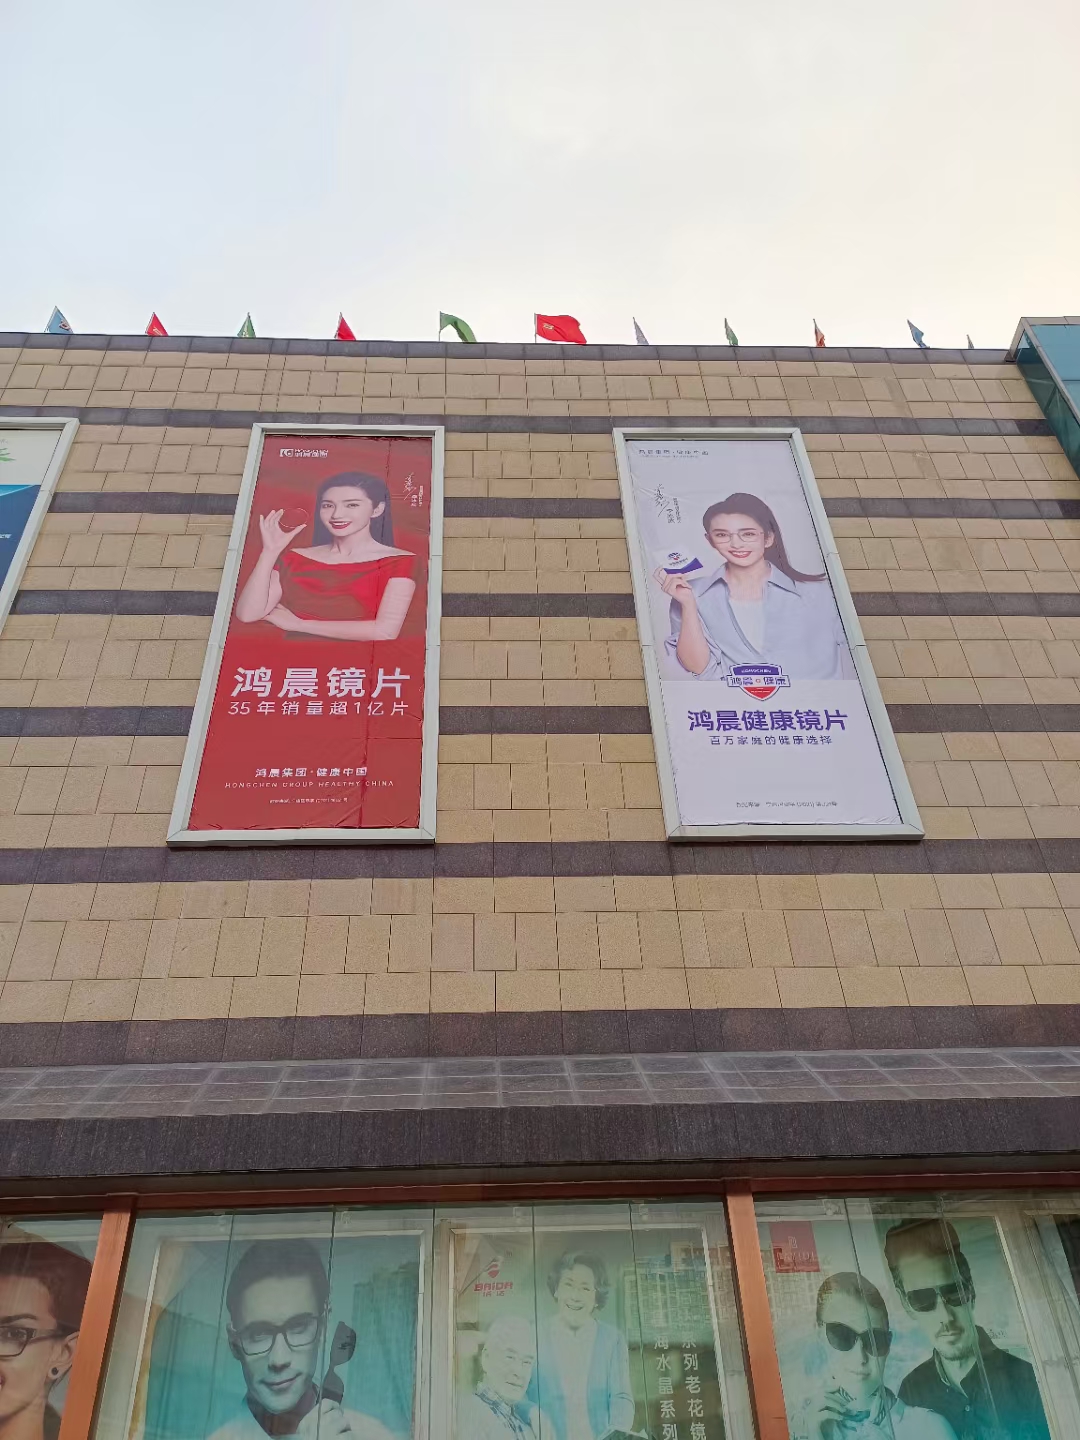 Chung tôi đang đên!Quảng cáo mới tại chợ quang học thành phố Trịnh Châu